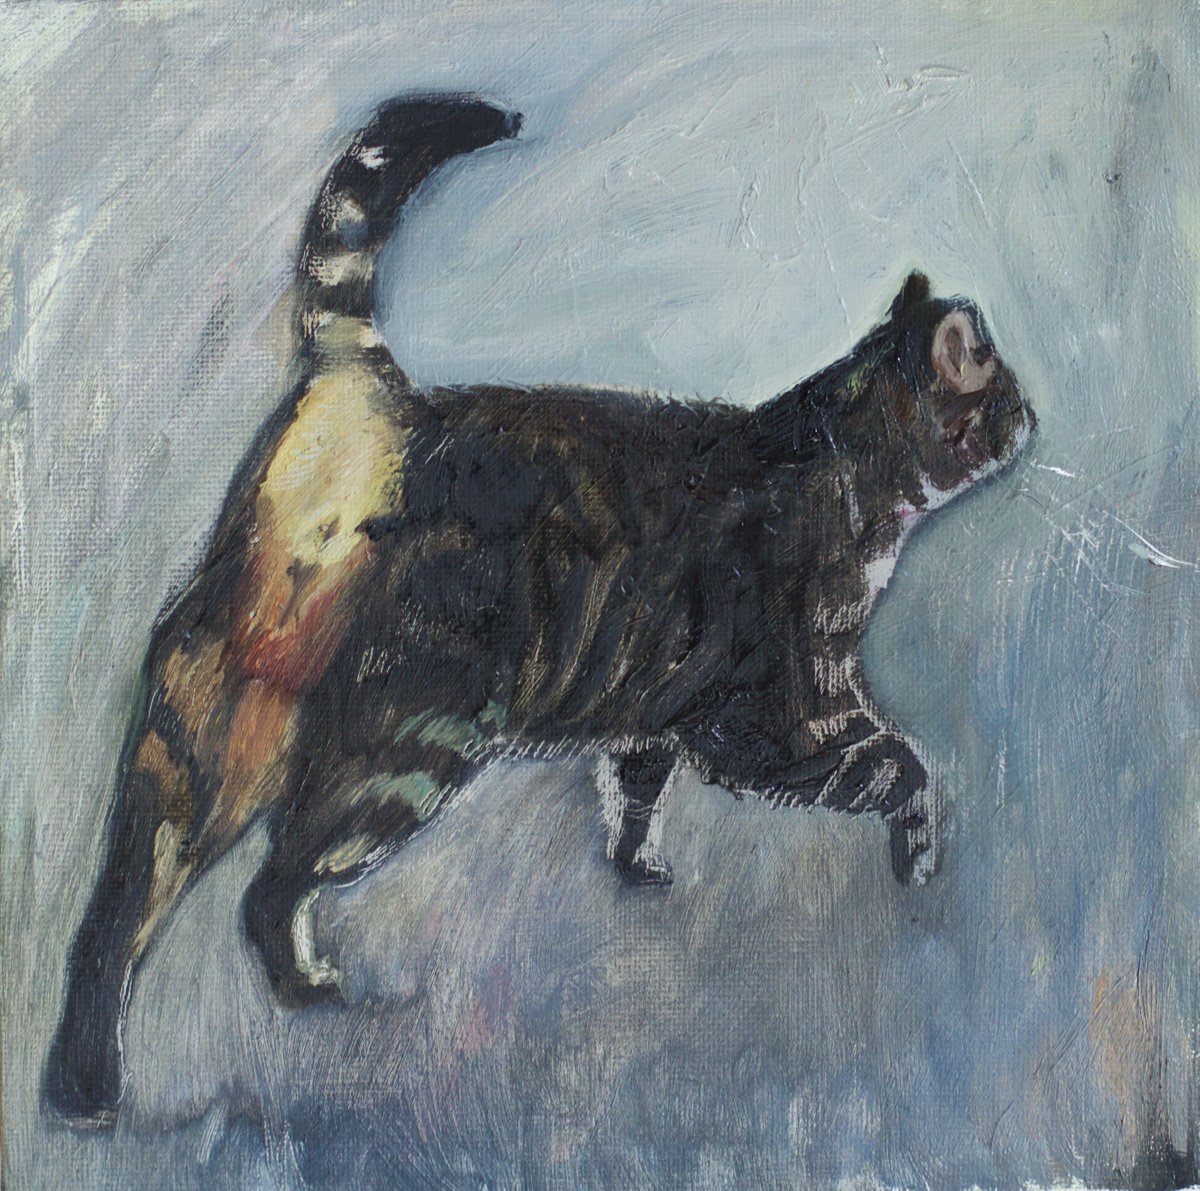 Grey Cat by Marina Skepner